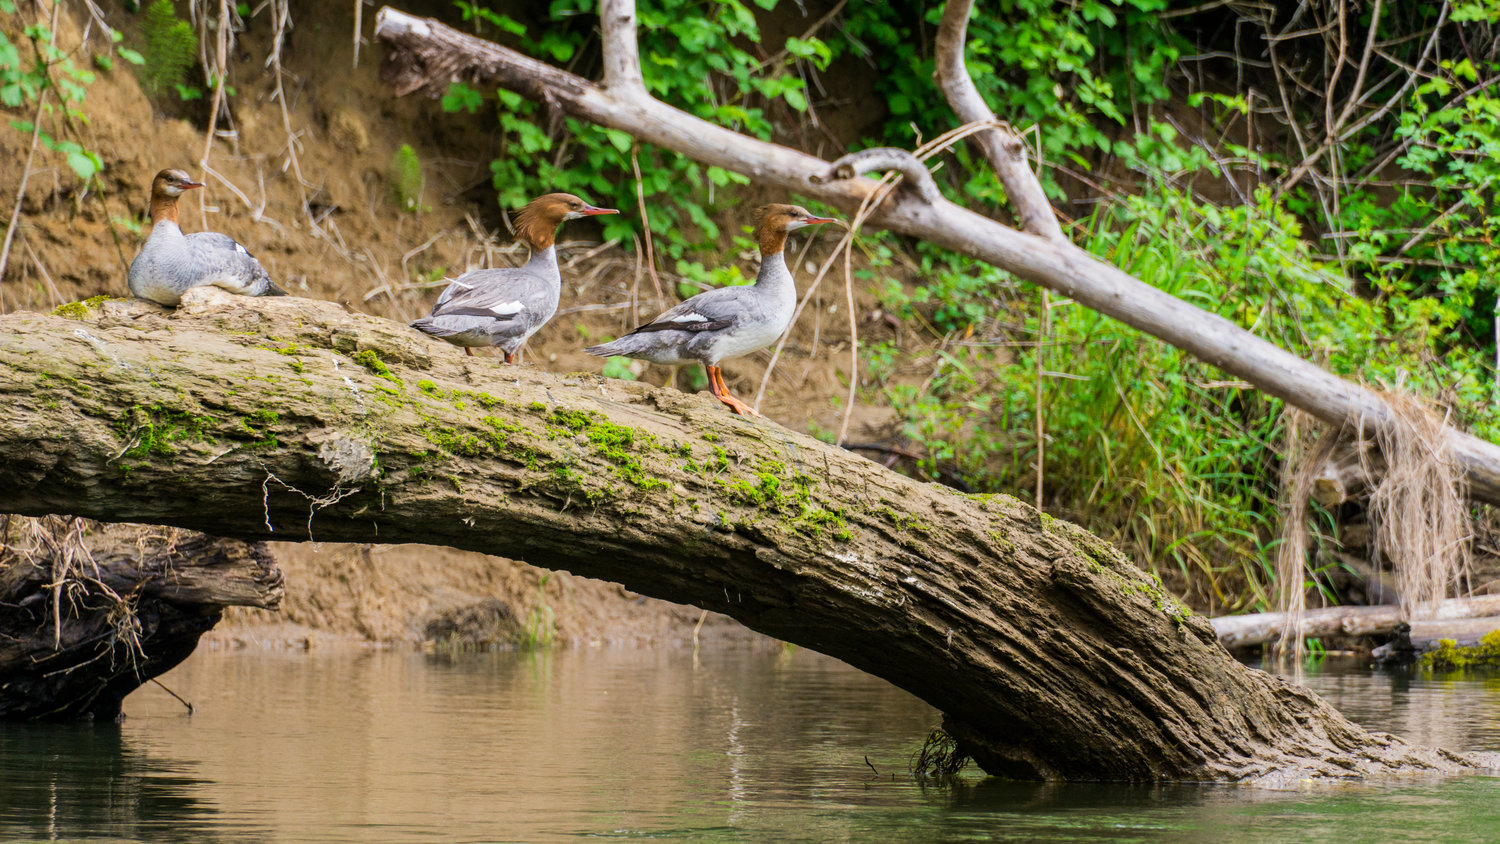 Merganser ducks rest on a log in the Chehalis River n